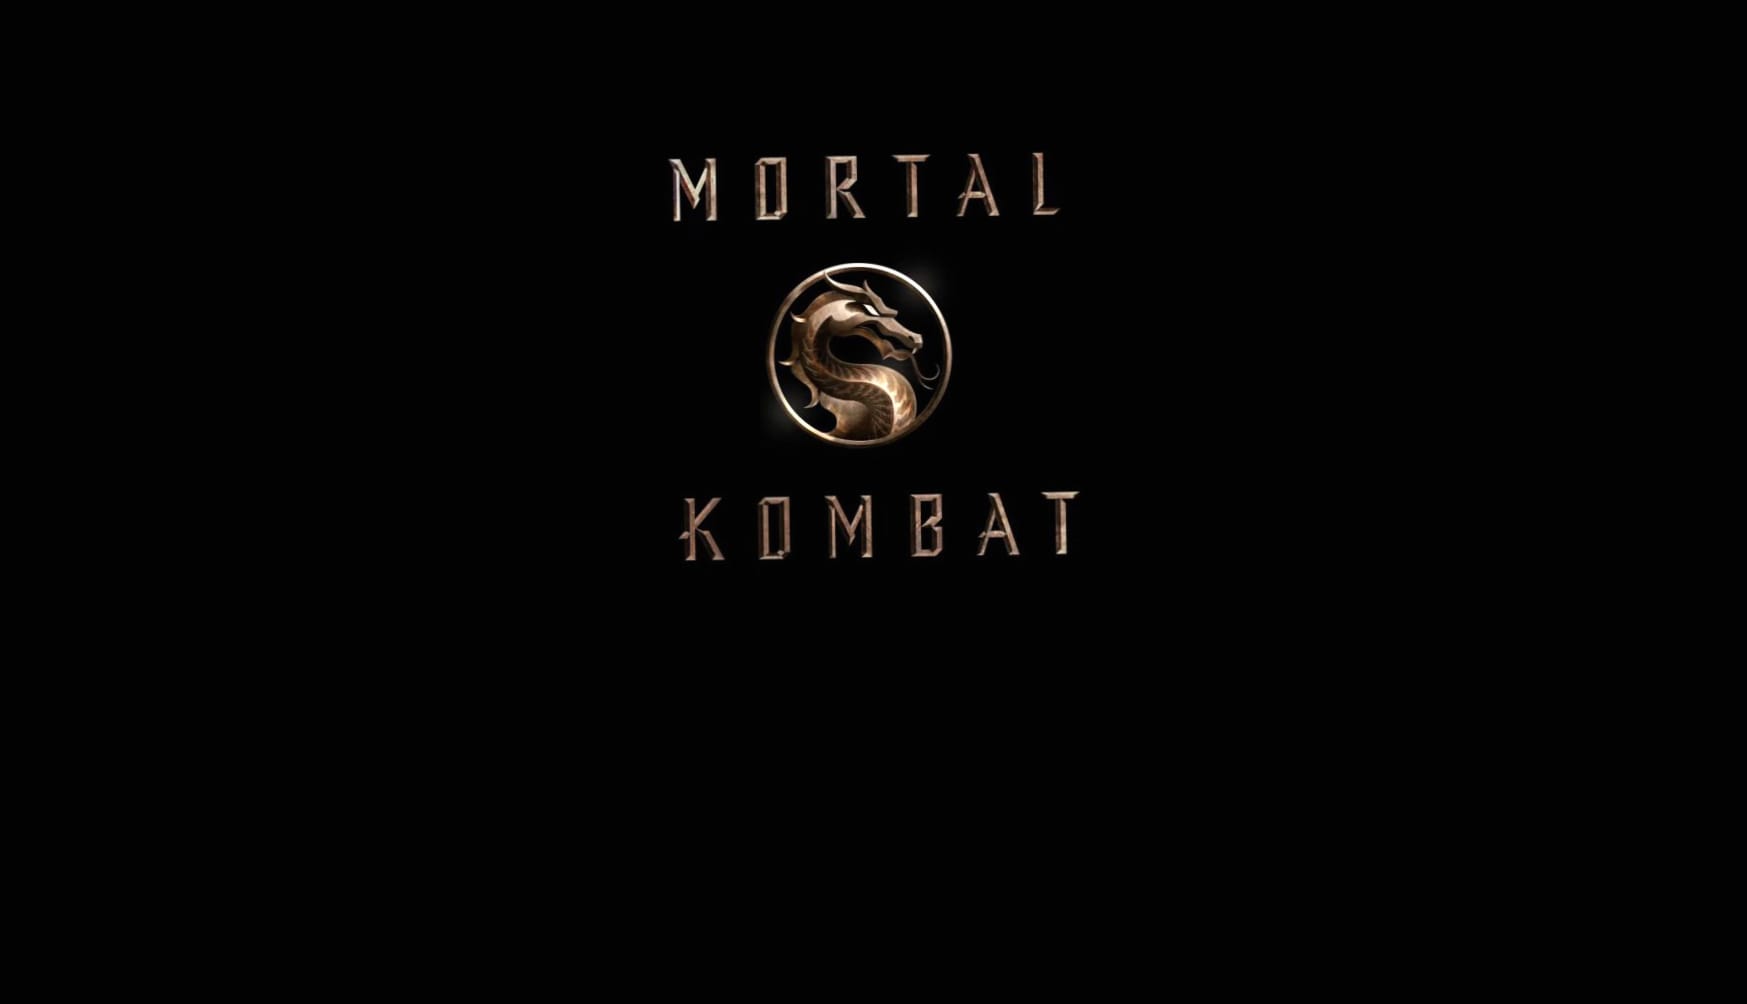 Mortal Kombat (2021) at 1024 x 1024 iPad size wallpapers HD quality